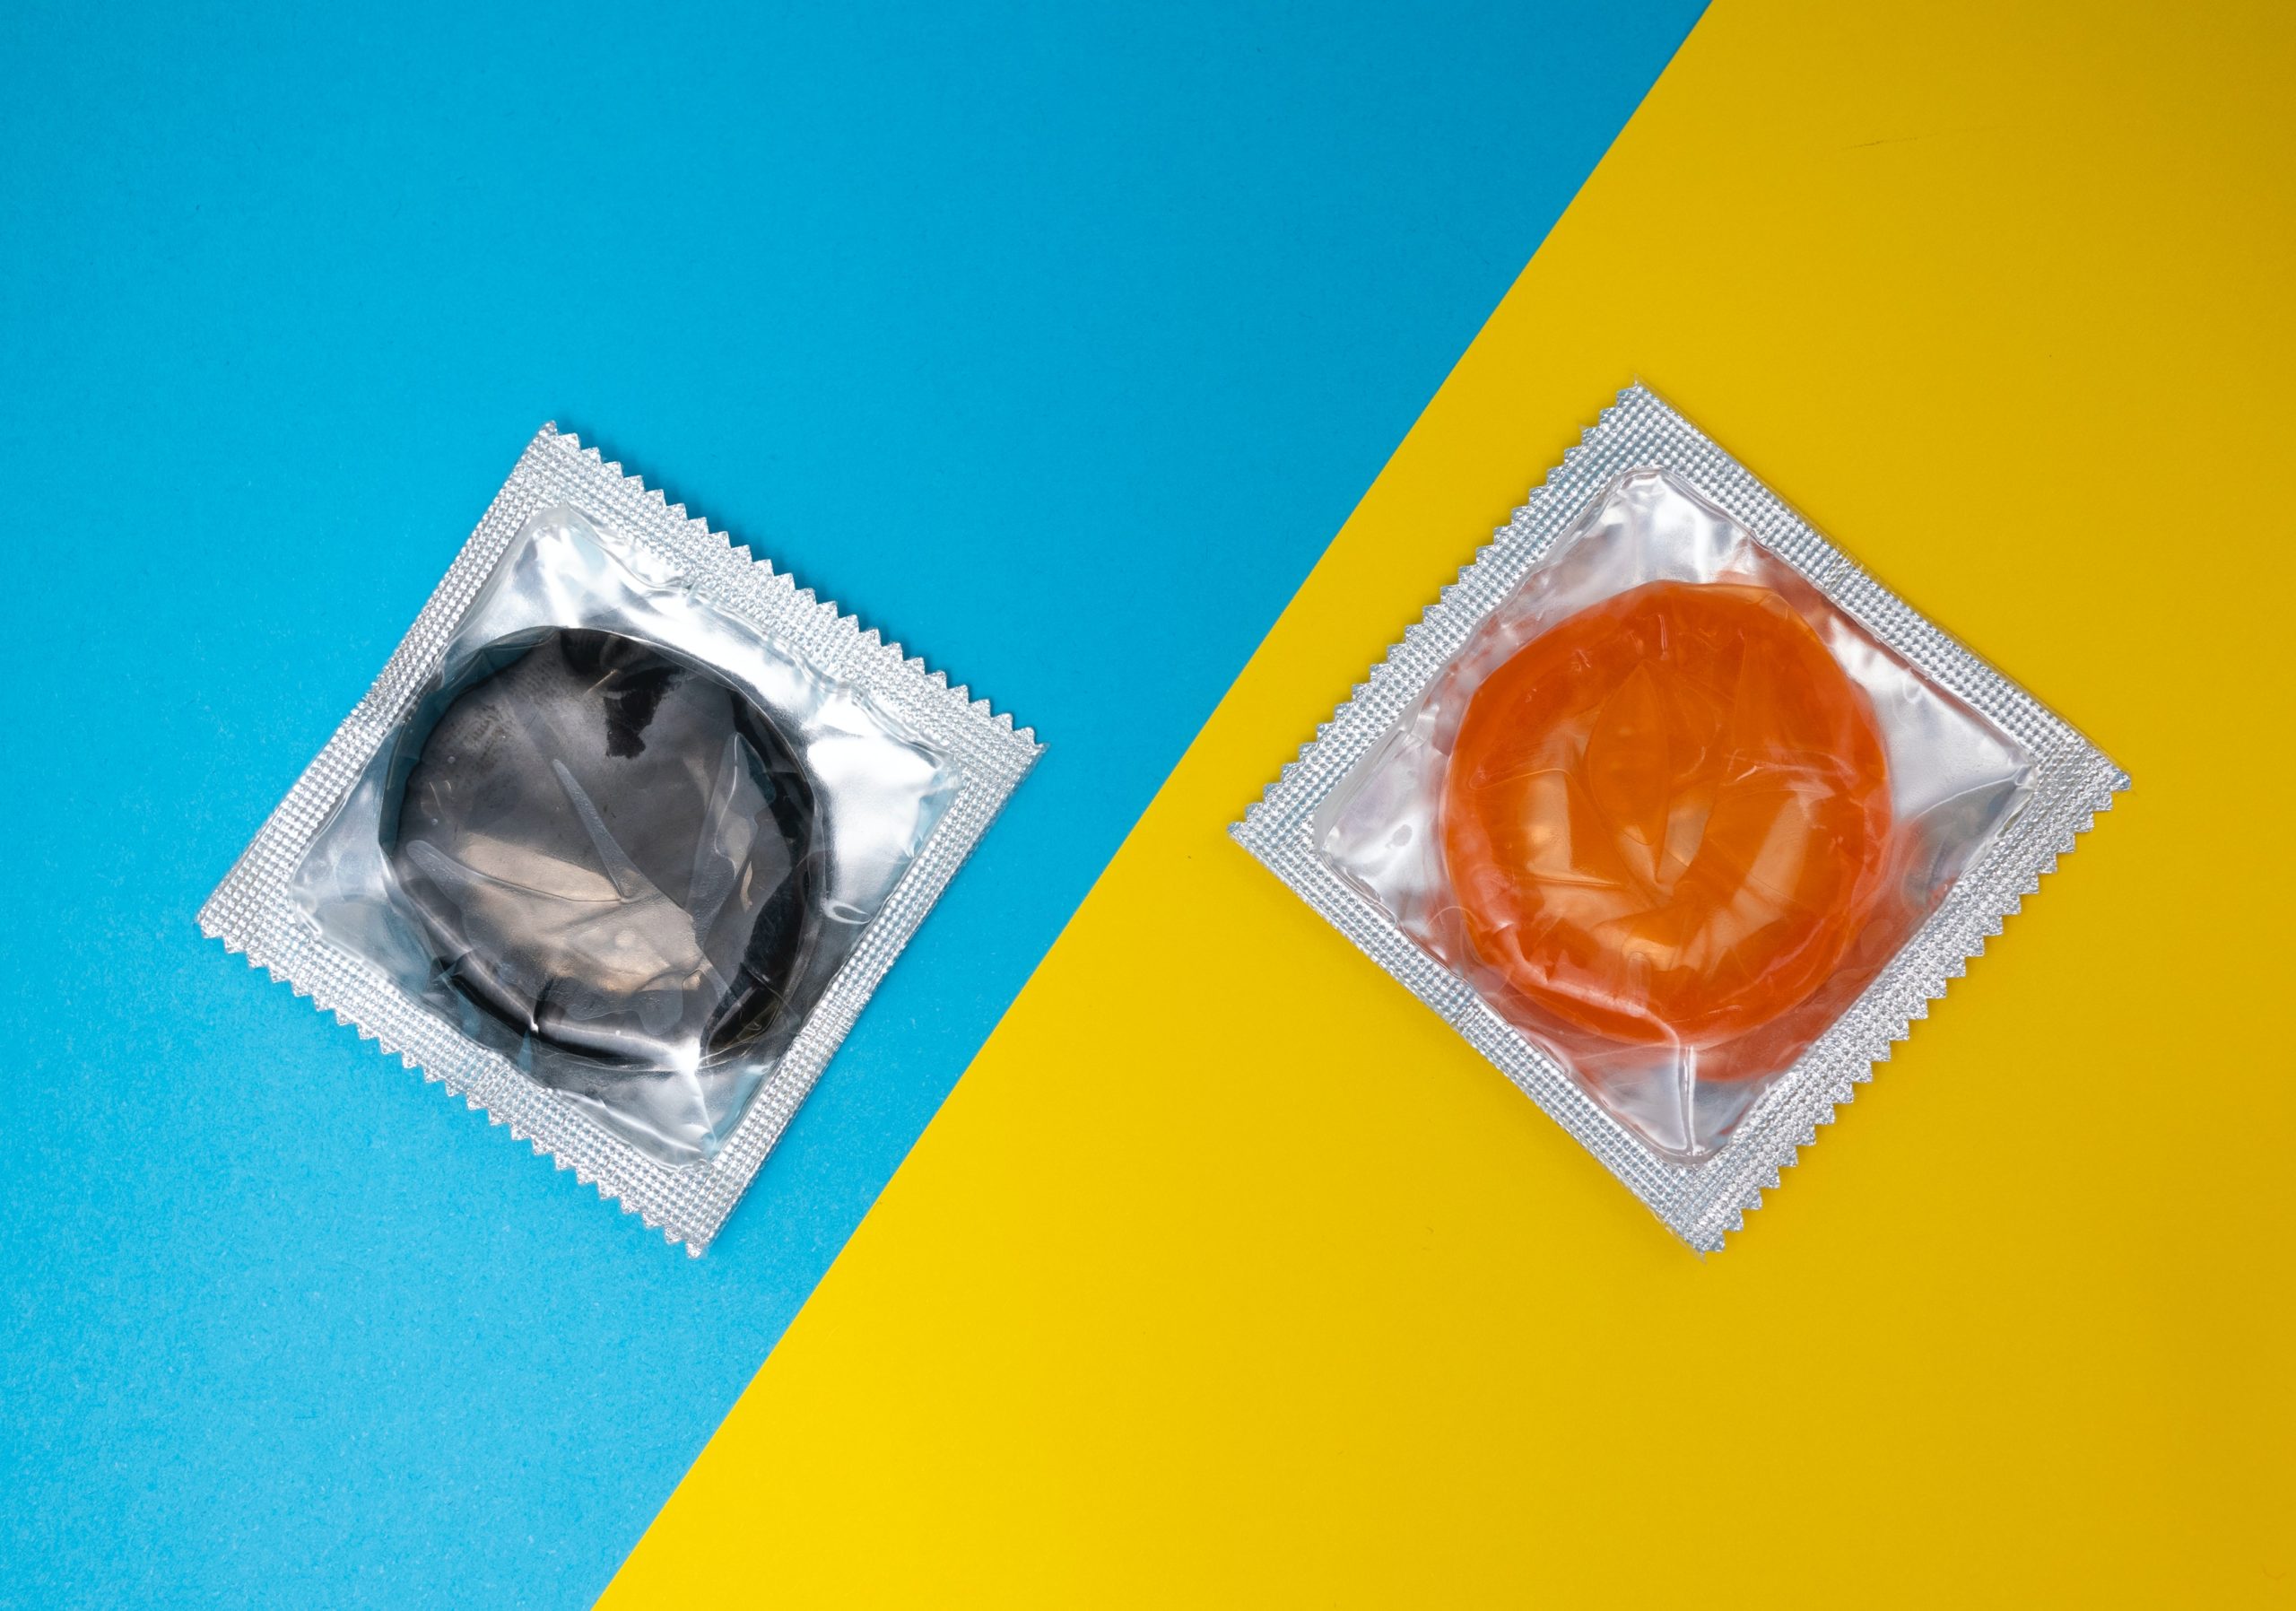 kondome-auf-blau-und-gelb-wissen-ueber-STI-macht-liebe-und-sex-mit-sicherheit-besser